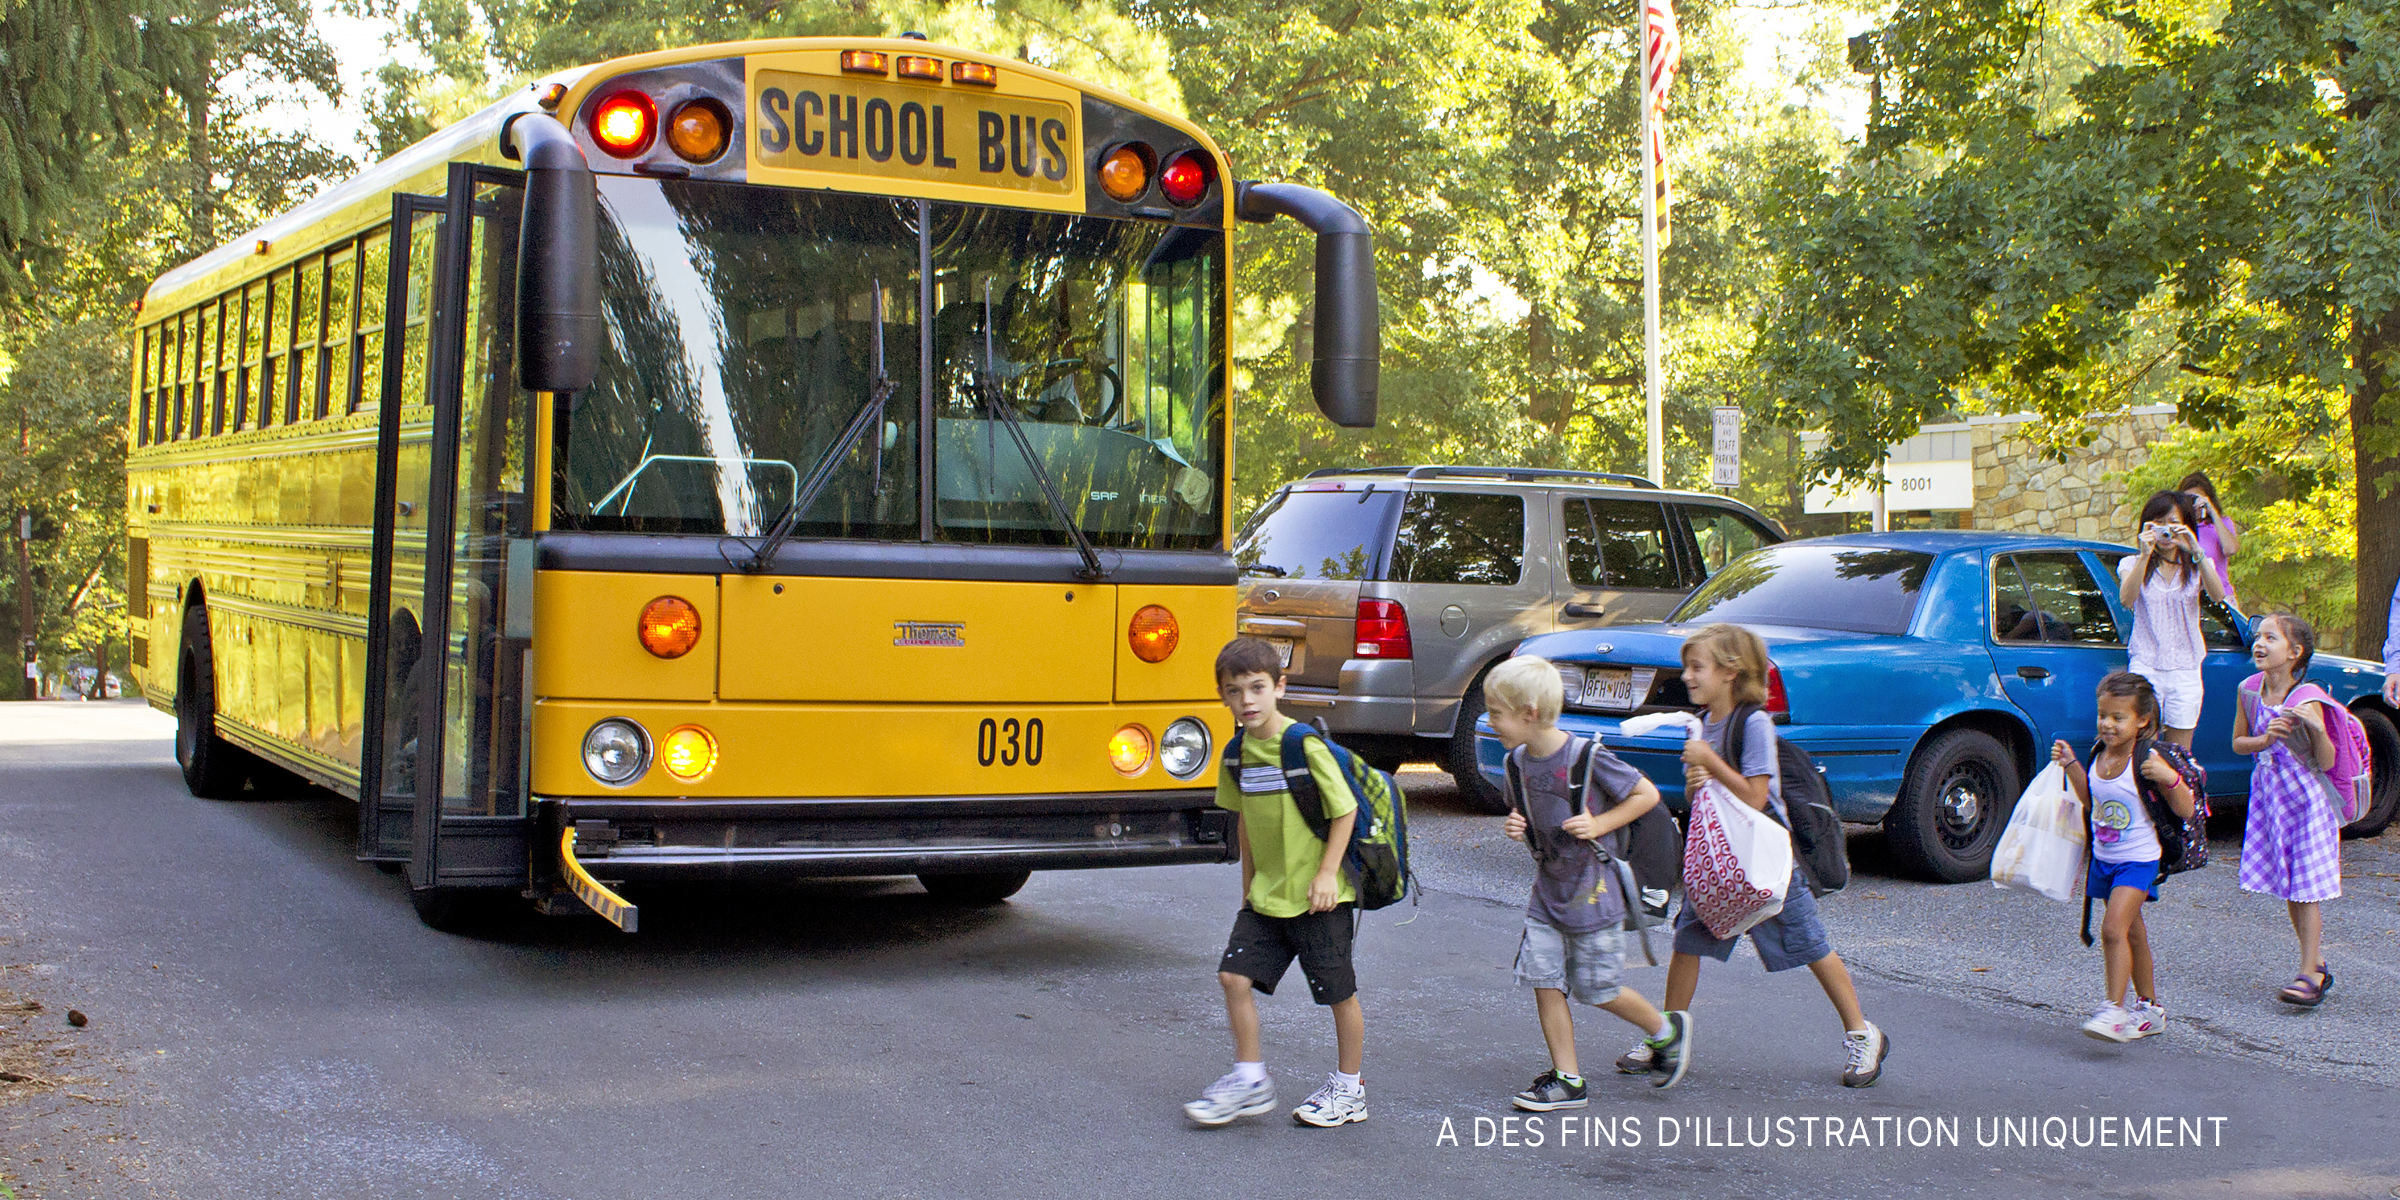 Des enfants marchant vers le bus scolaire. | Source : Flickr / woodleywonderworks (CC BY 2.0)